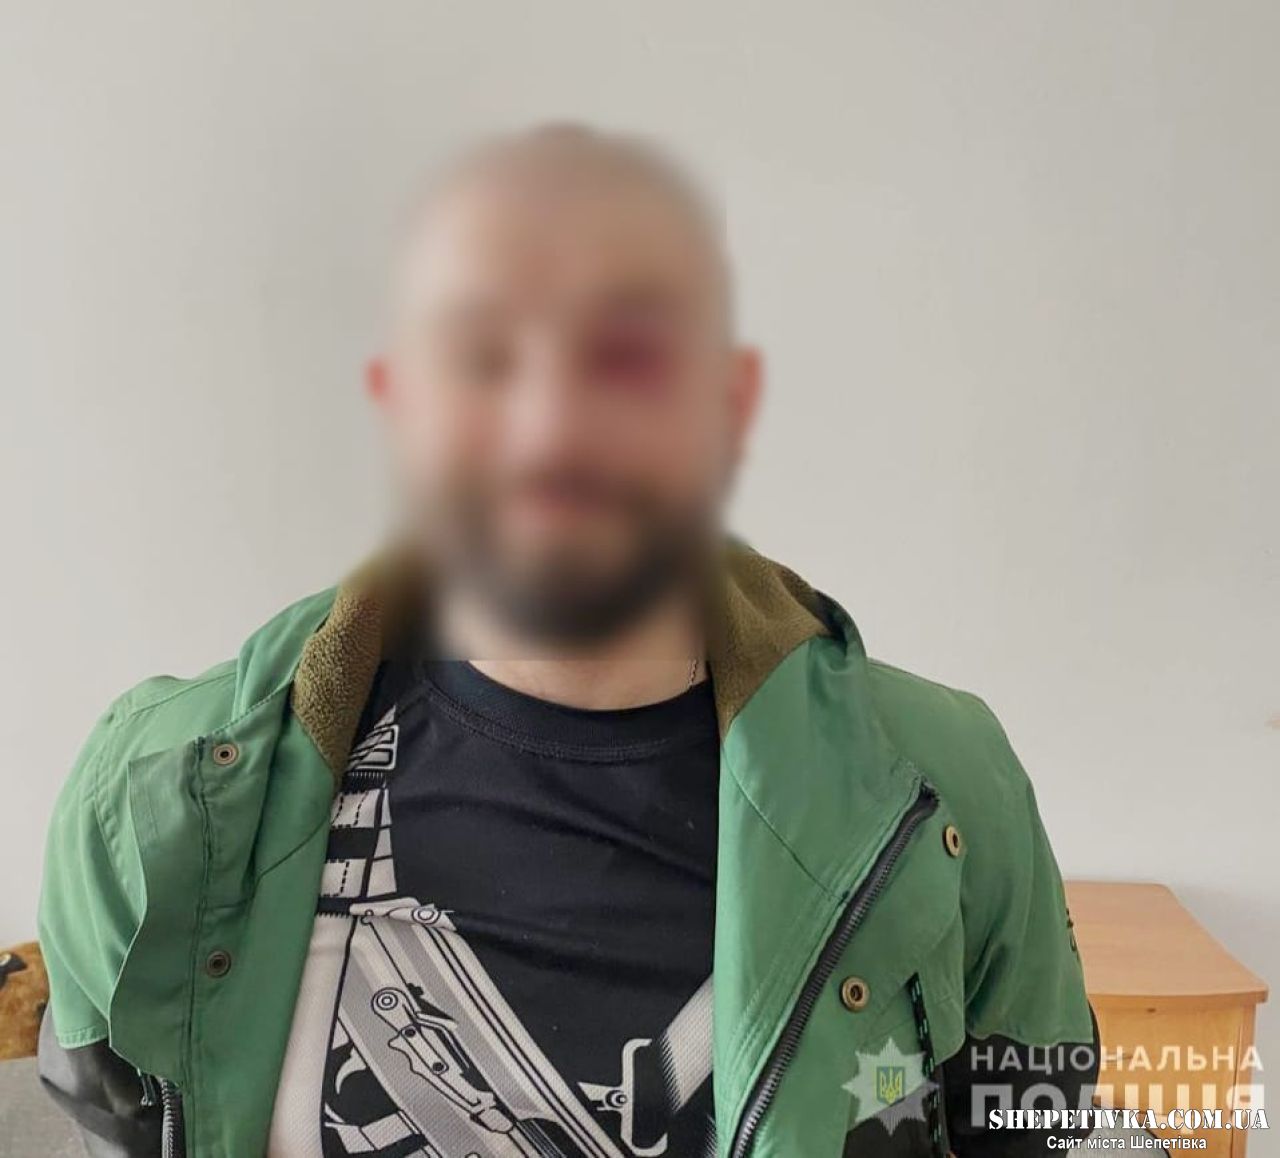 На Шепетівщині судять чоловіка за зберігання особливо небезпечних наркотиків